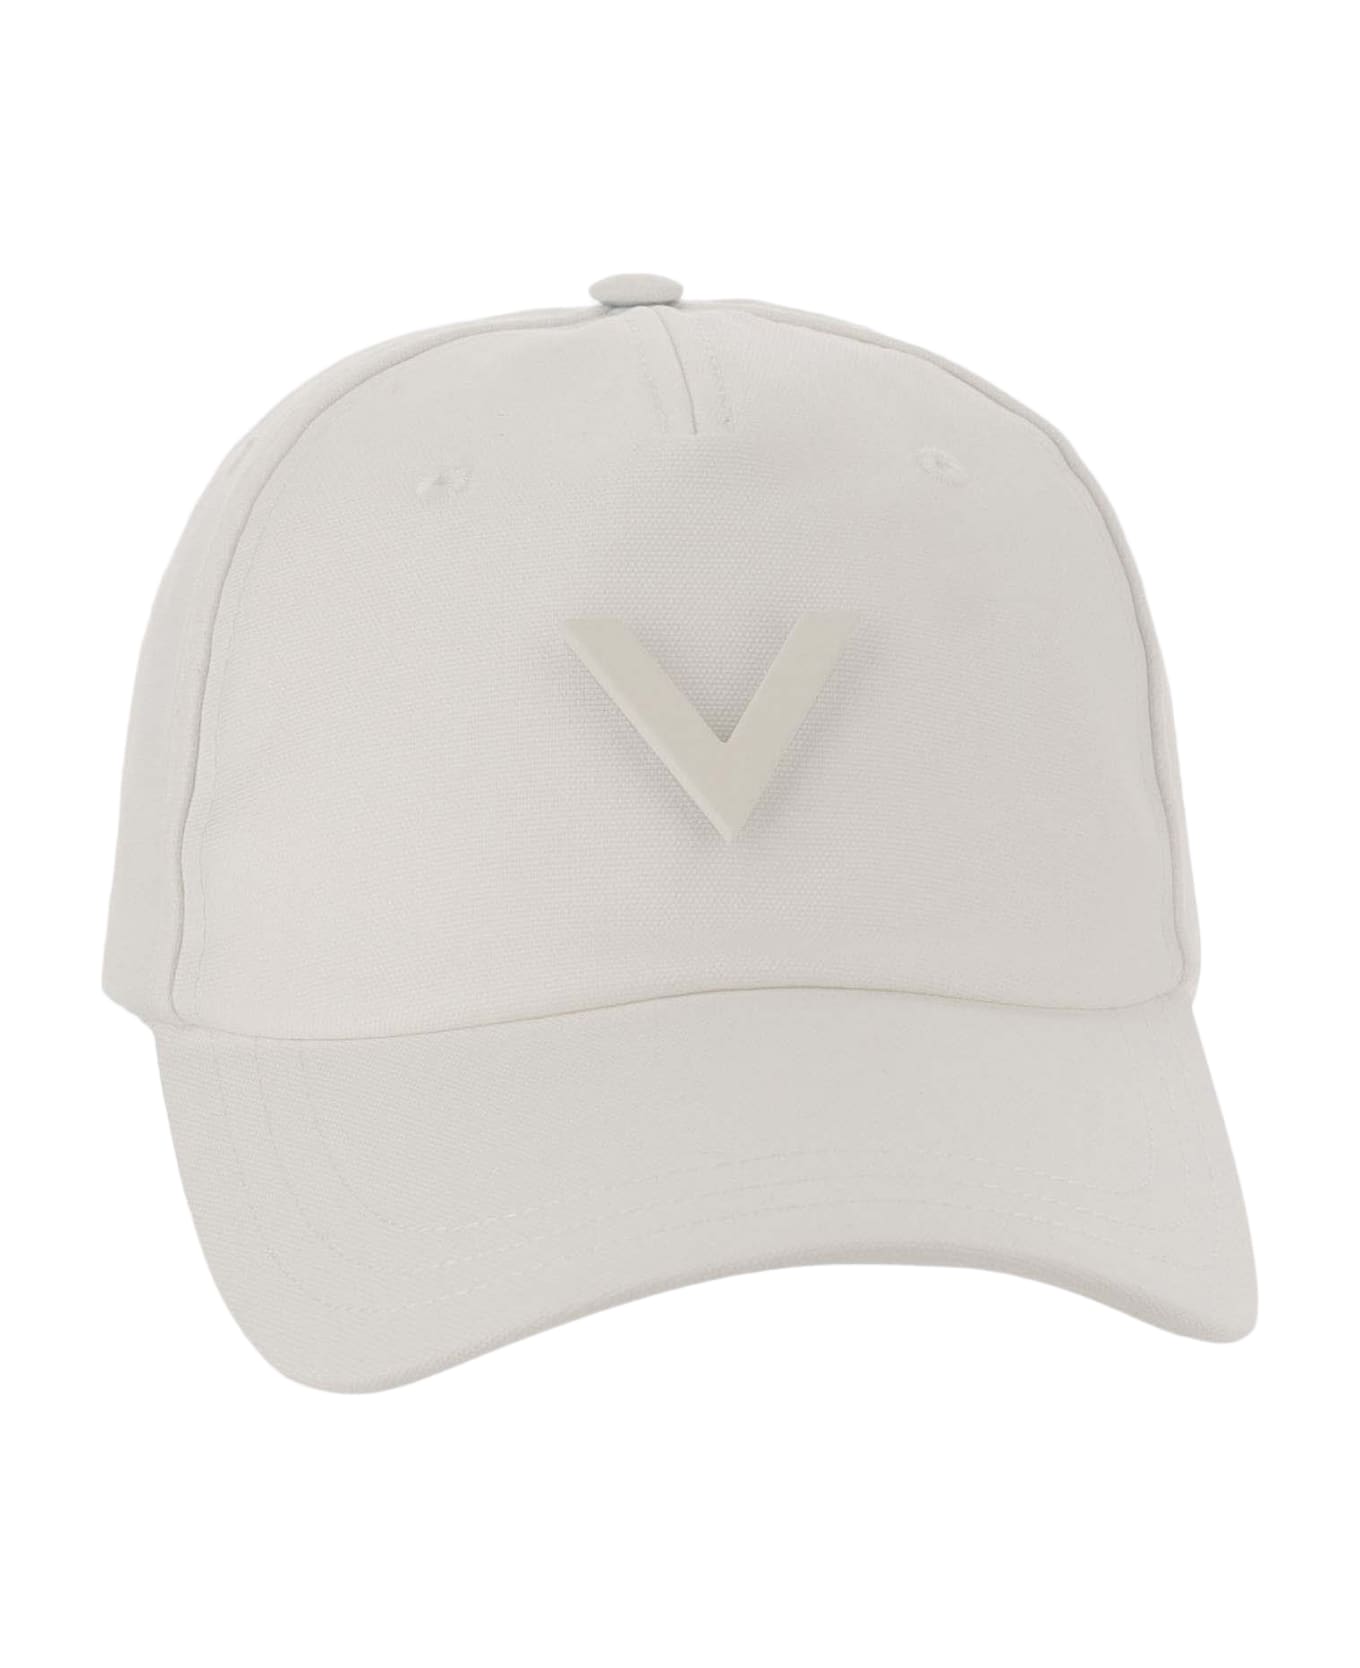 Valentino Garavani Canvas Hat With Vlogo - Ivory